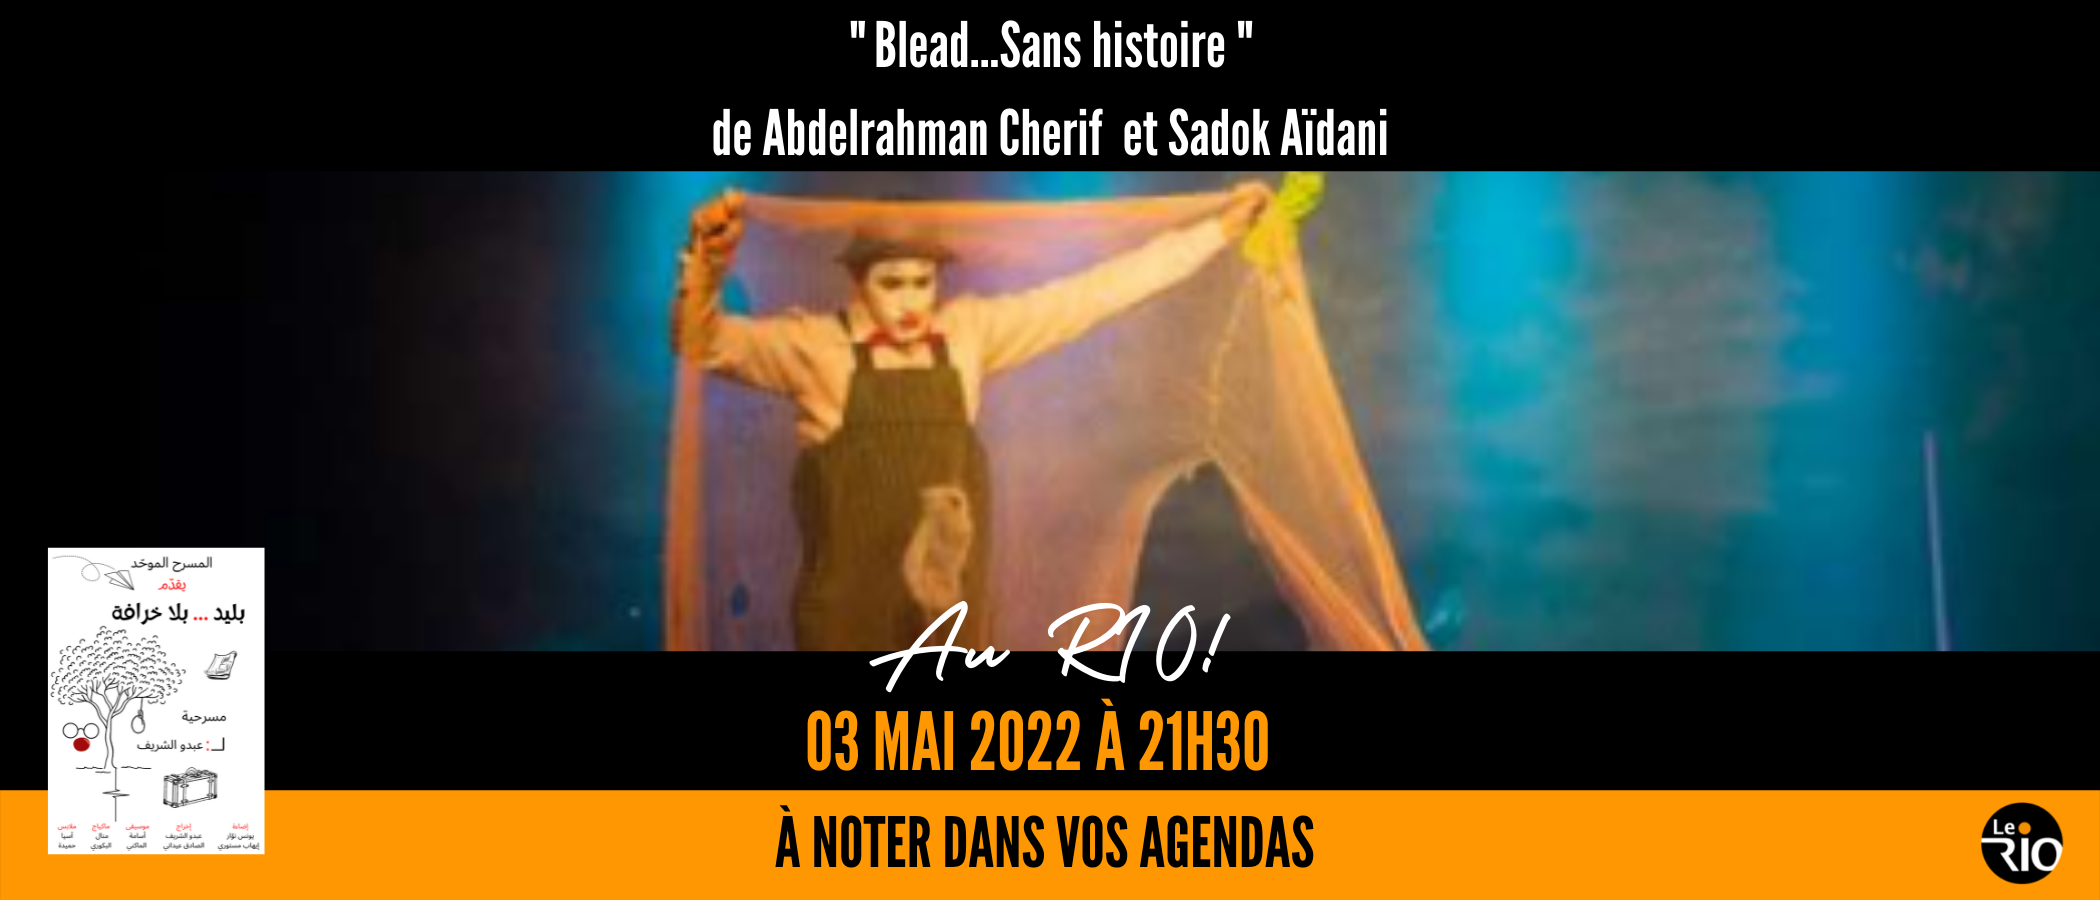 Spécial Aid  بليد... بلا خرافة  Blead… sans histoire de Abdou Cherif et Sadok Aidani